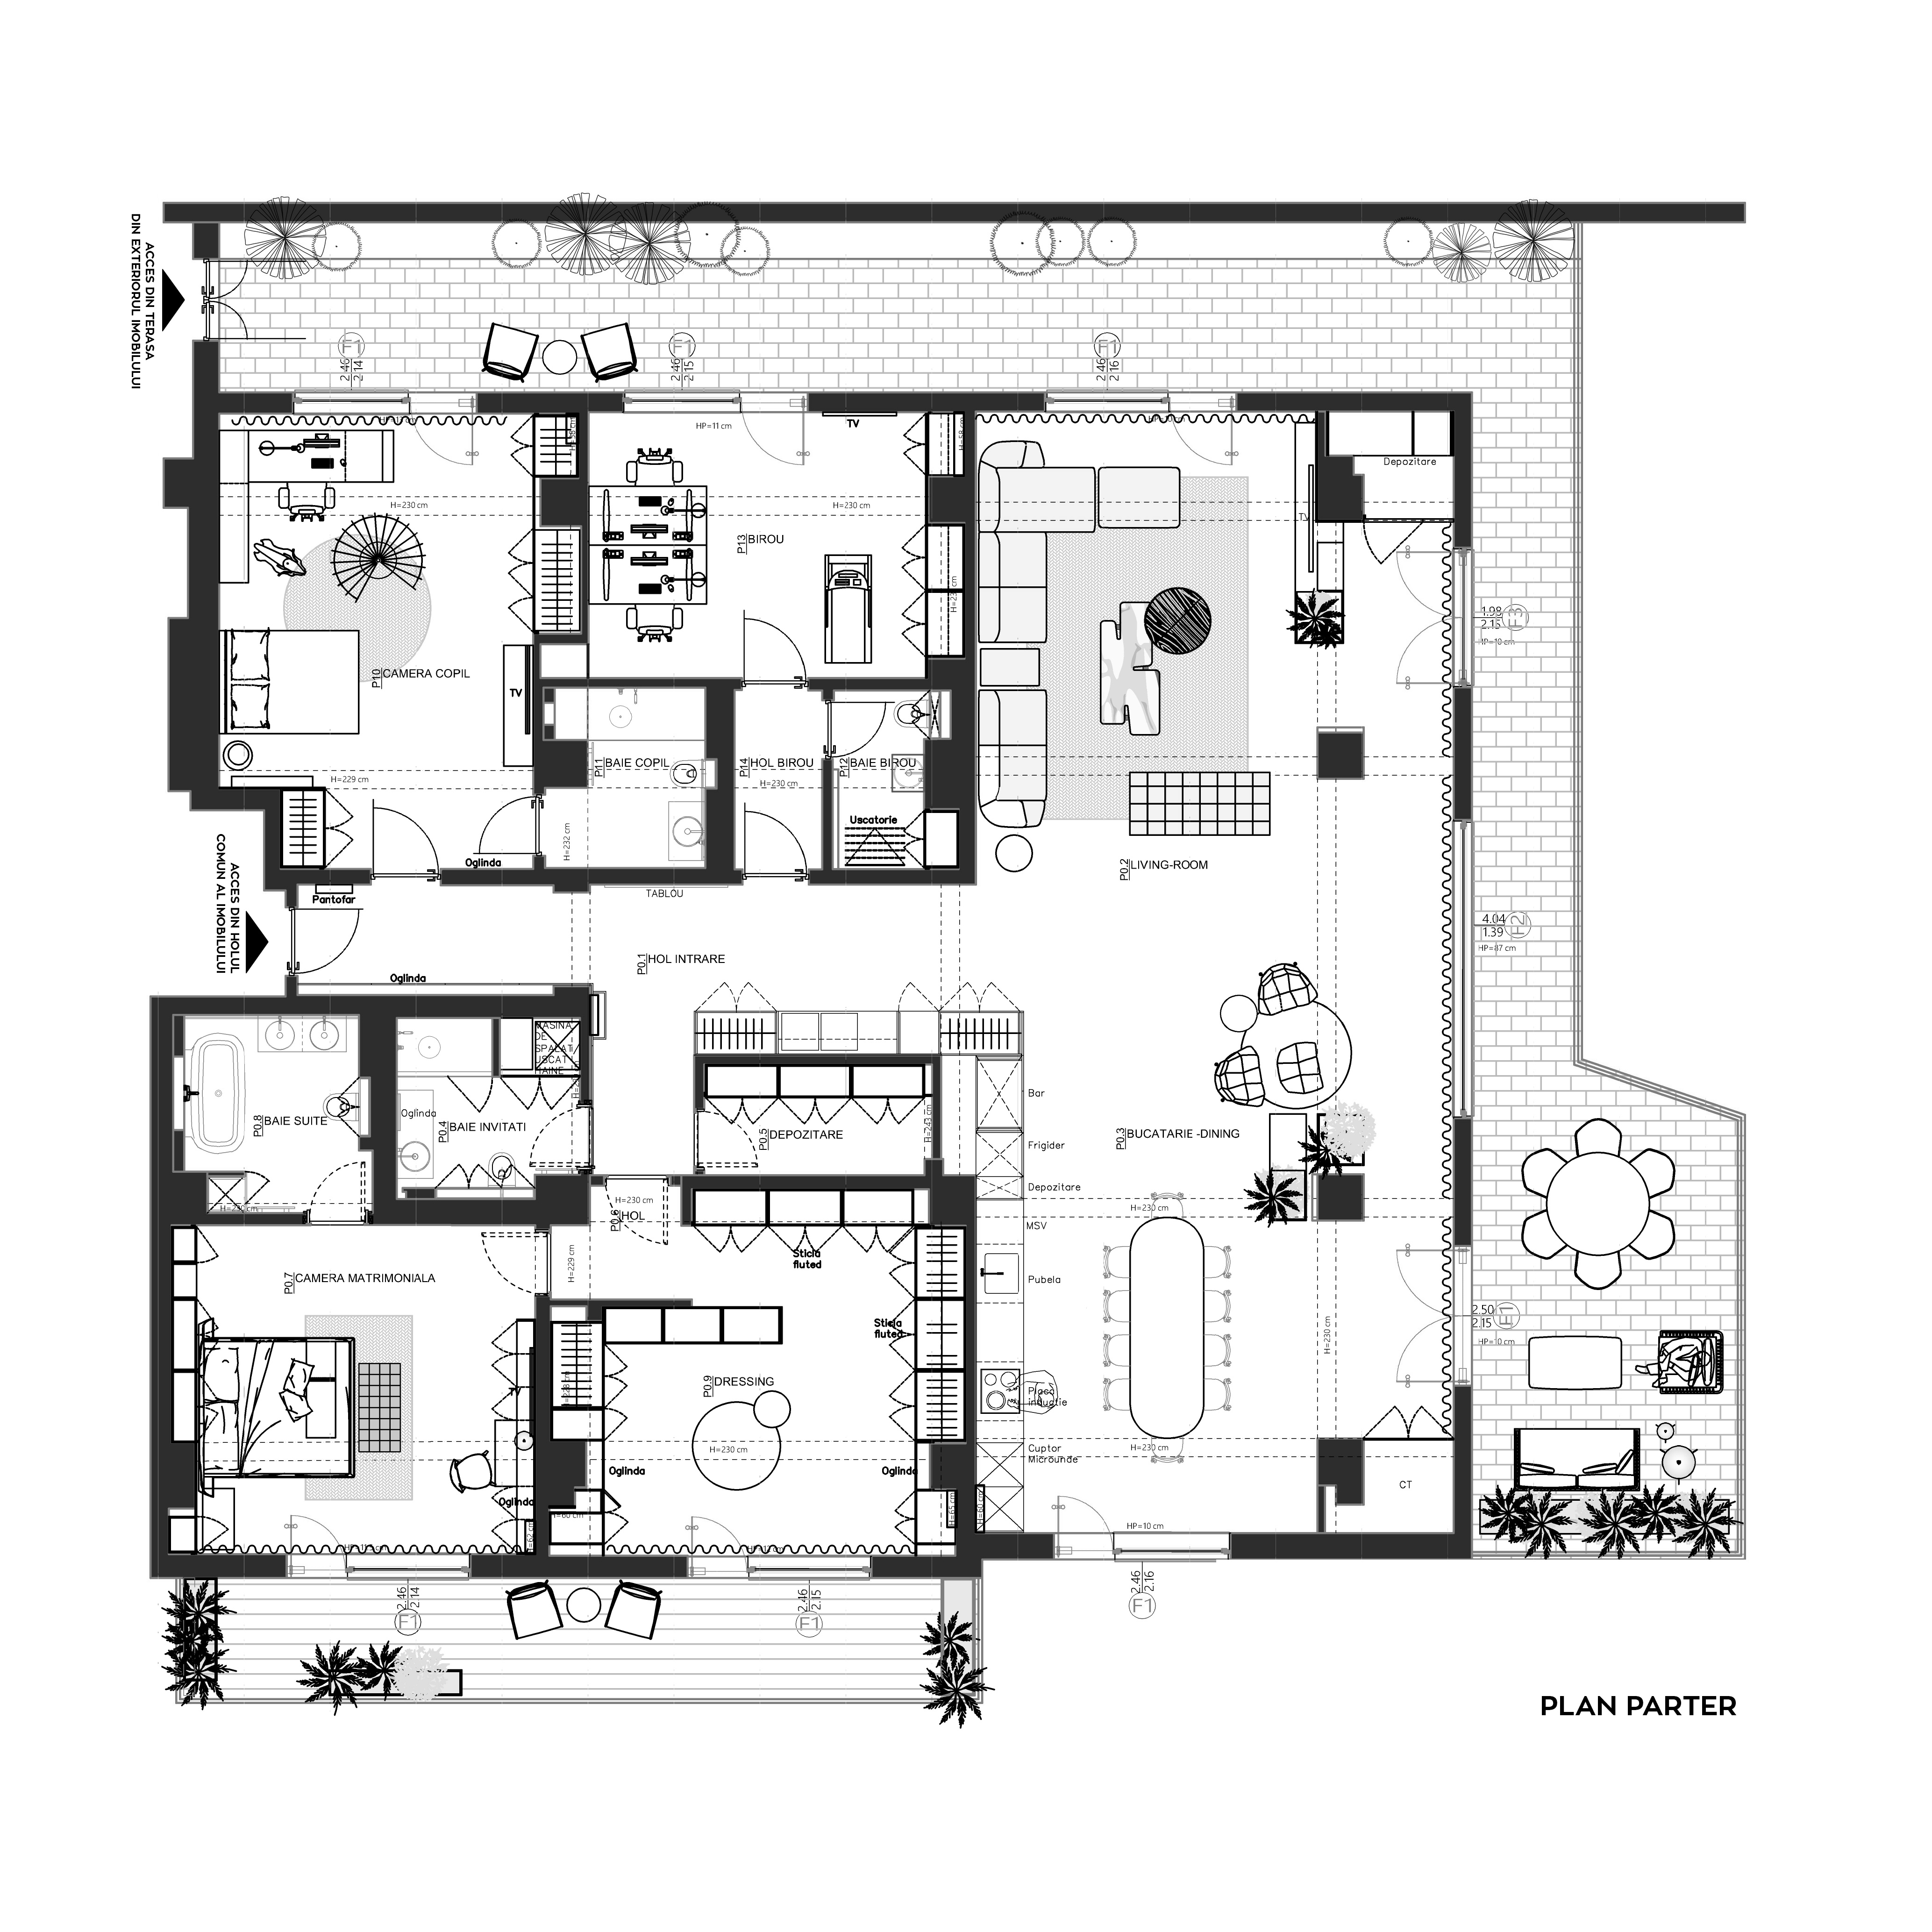 Locuință cu spații ample: o viziune arhitecturală contemporană 